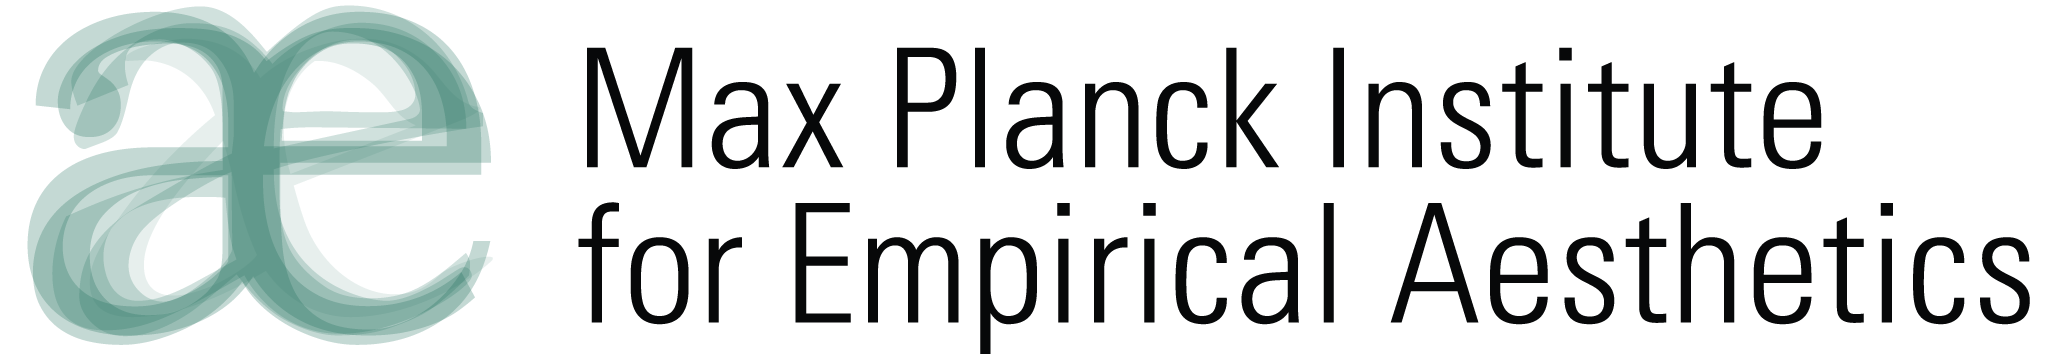 Max-Planck-Institute for Empirical Aesthetics